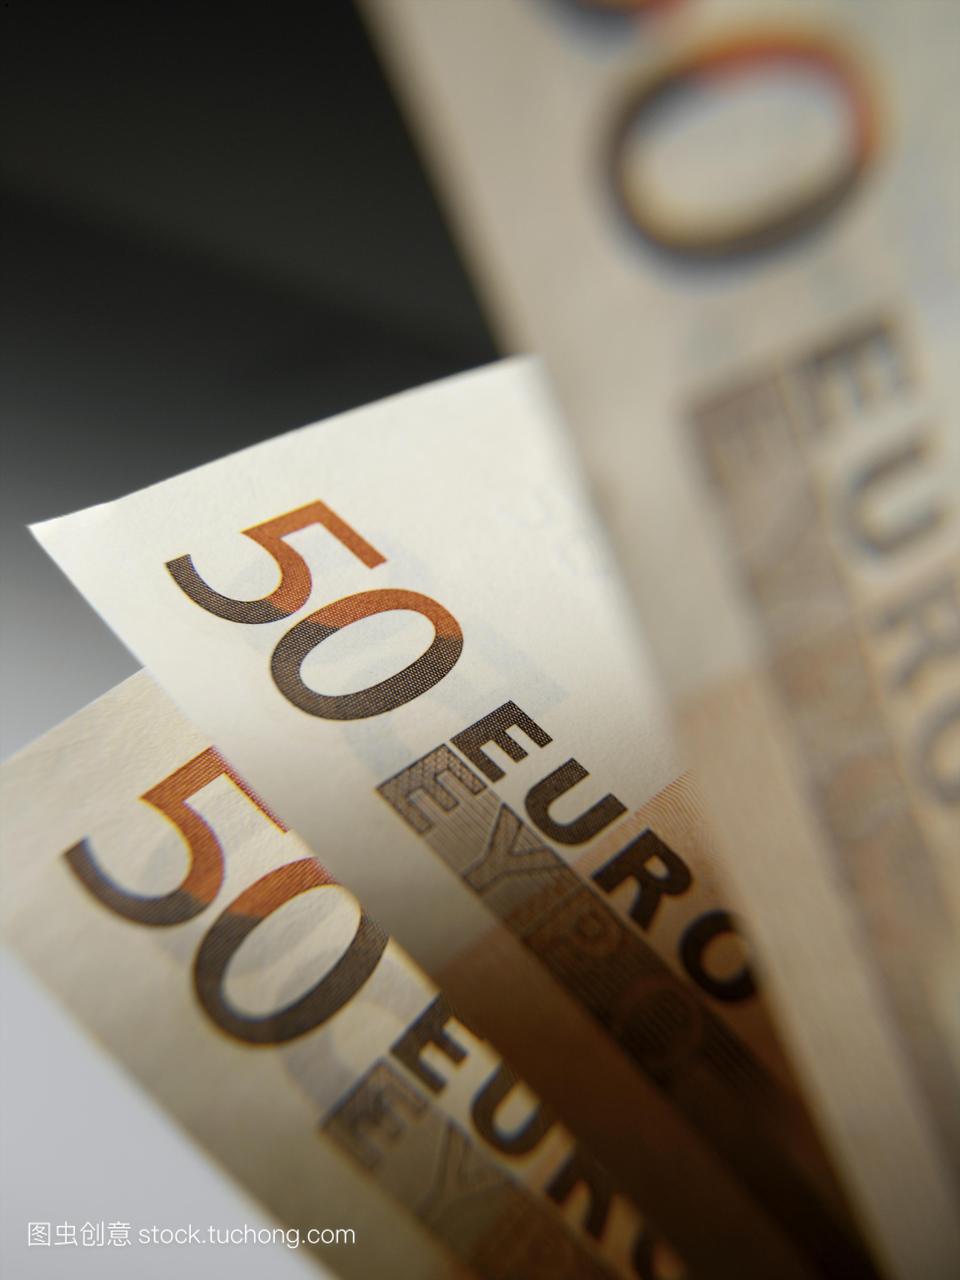 欧元纸币。三百五十欧元的费用。的通用货币是